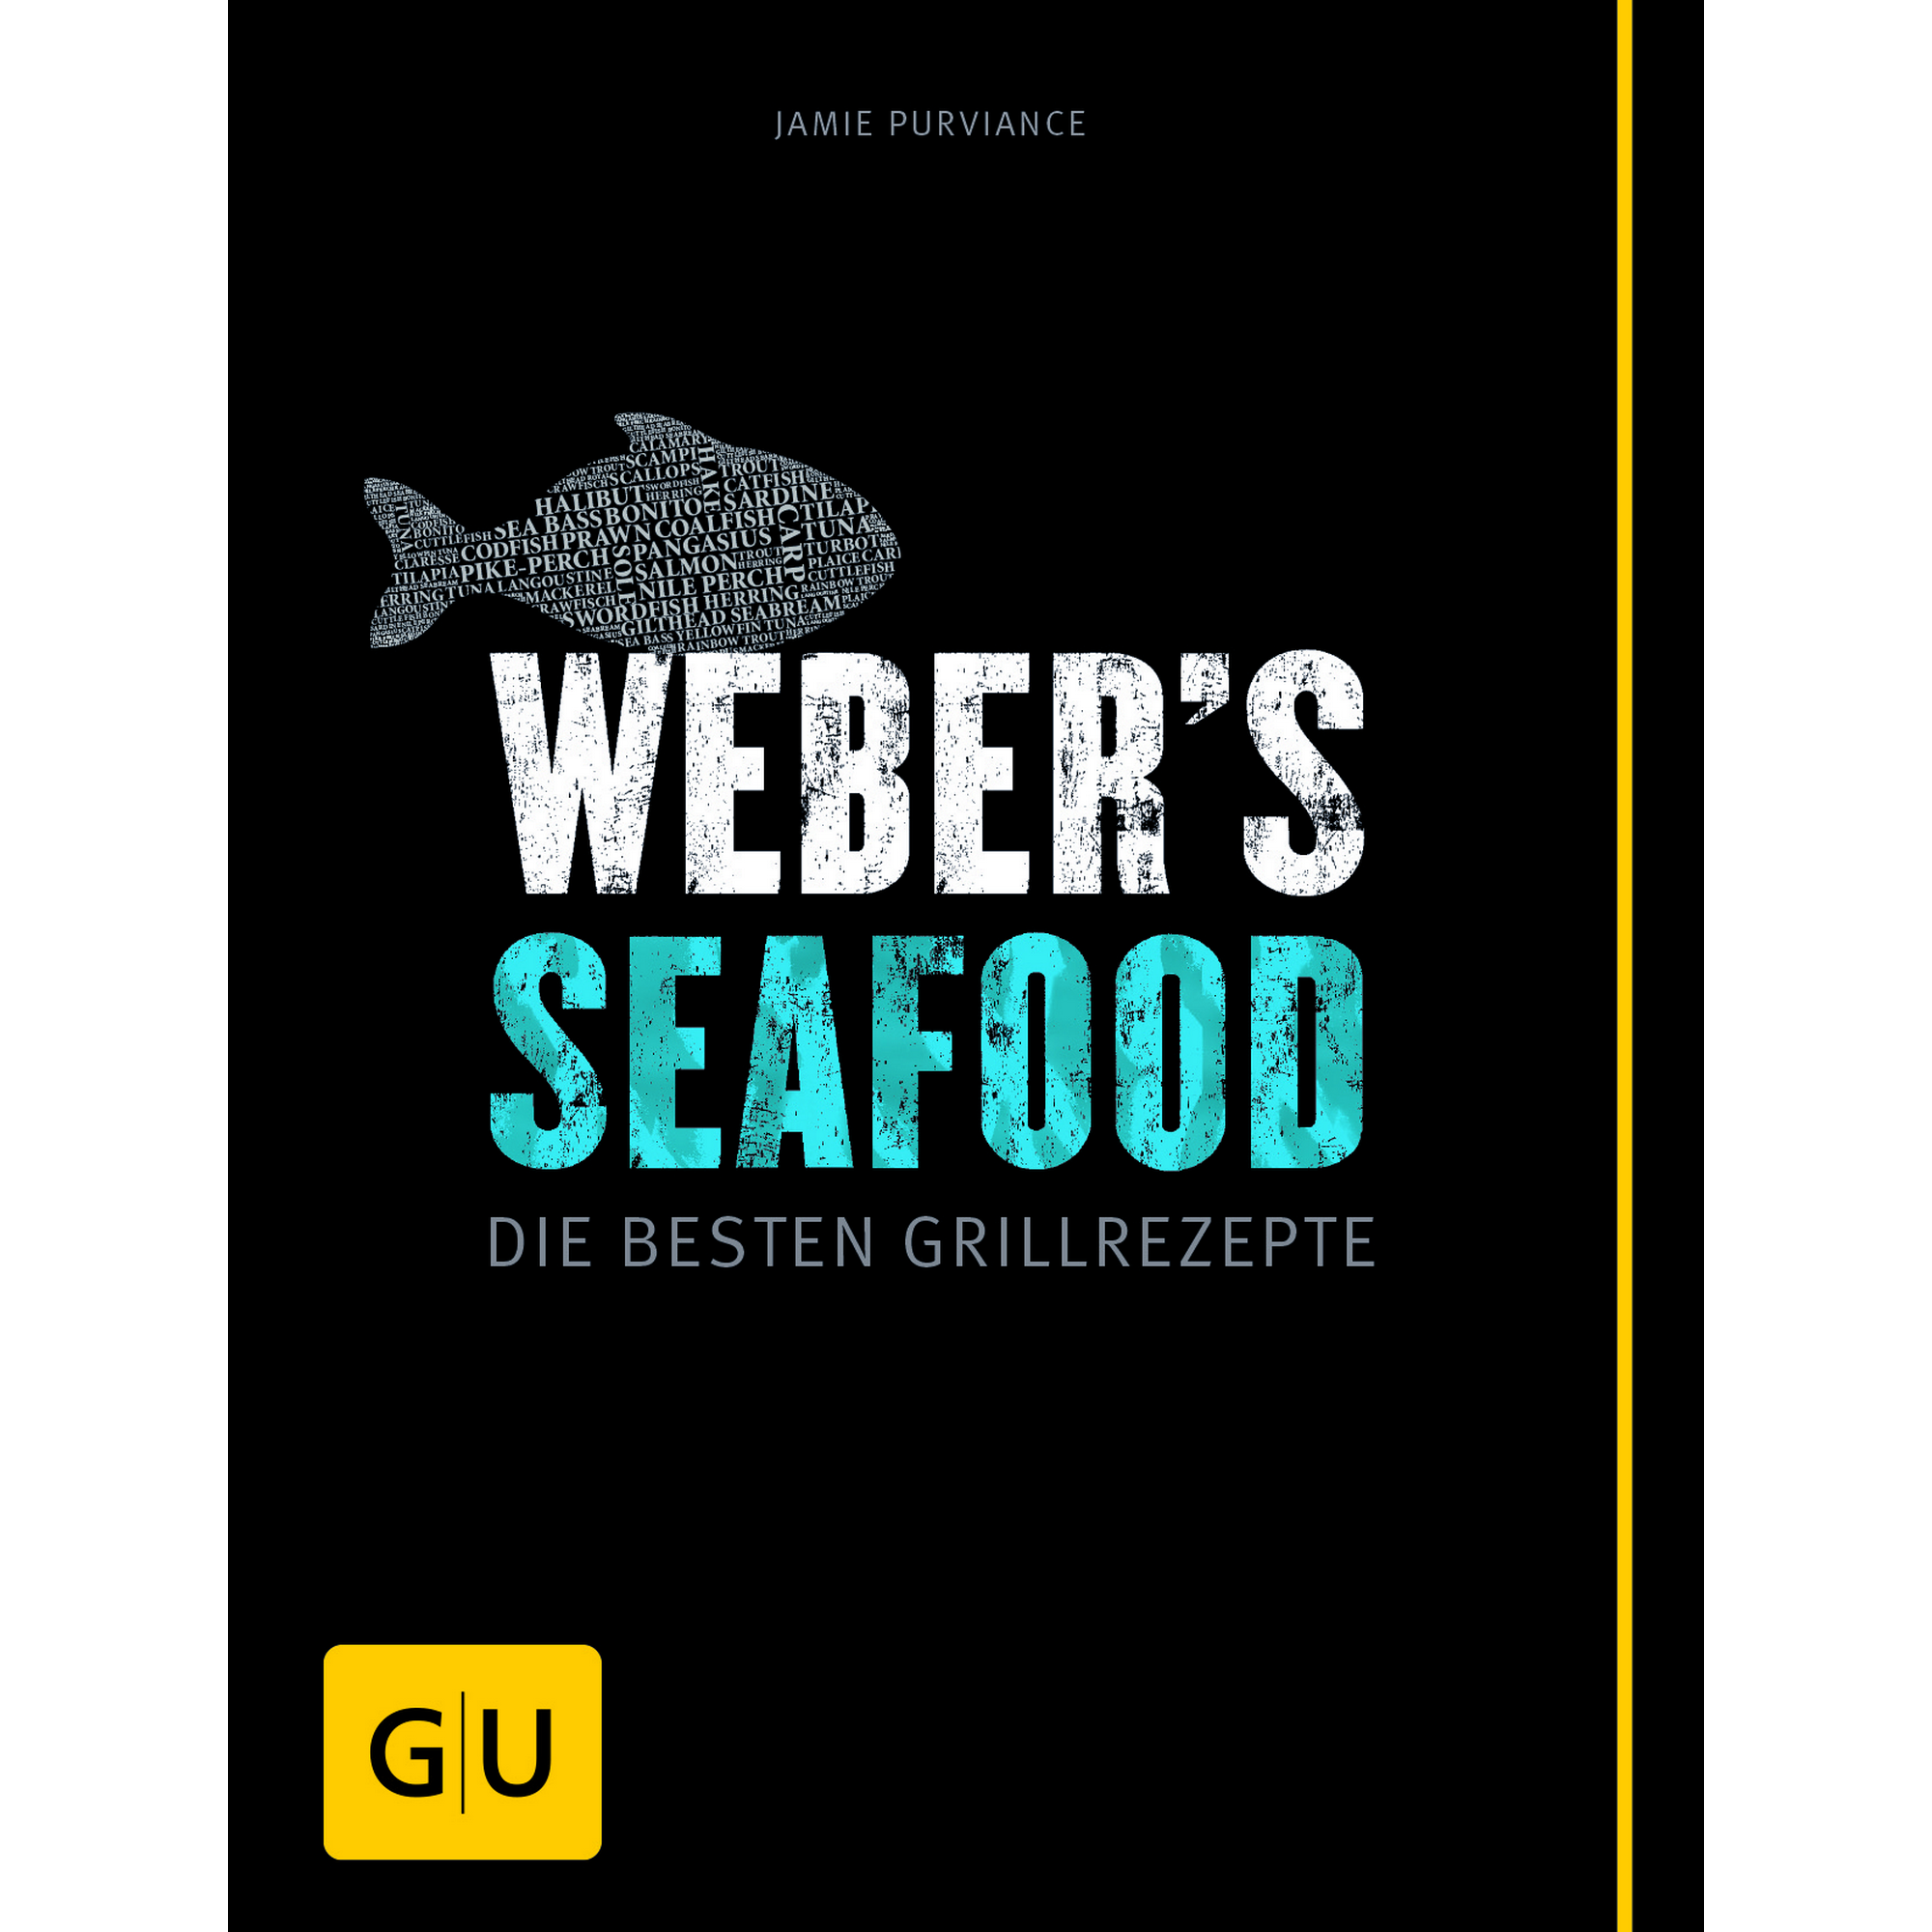 Grillbuch Jamie Purviance 'Weber's Seafood: Die besten Grillrezepte' + product picture